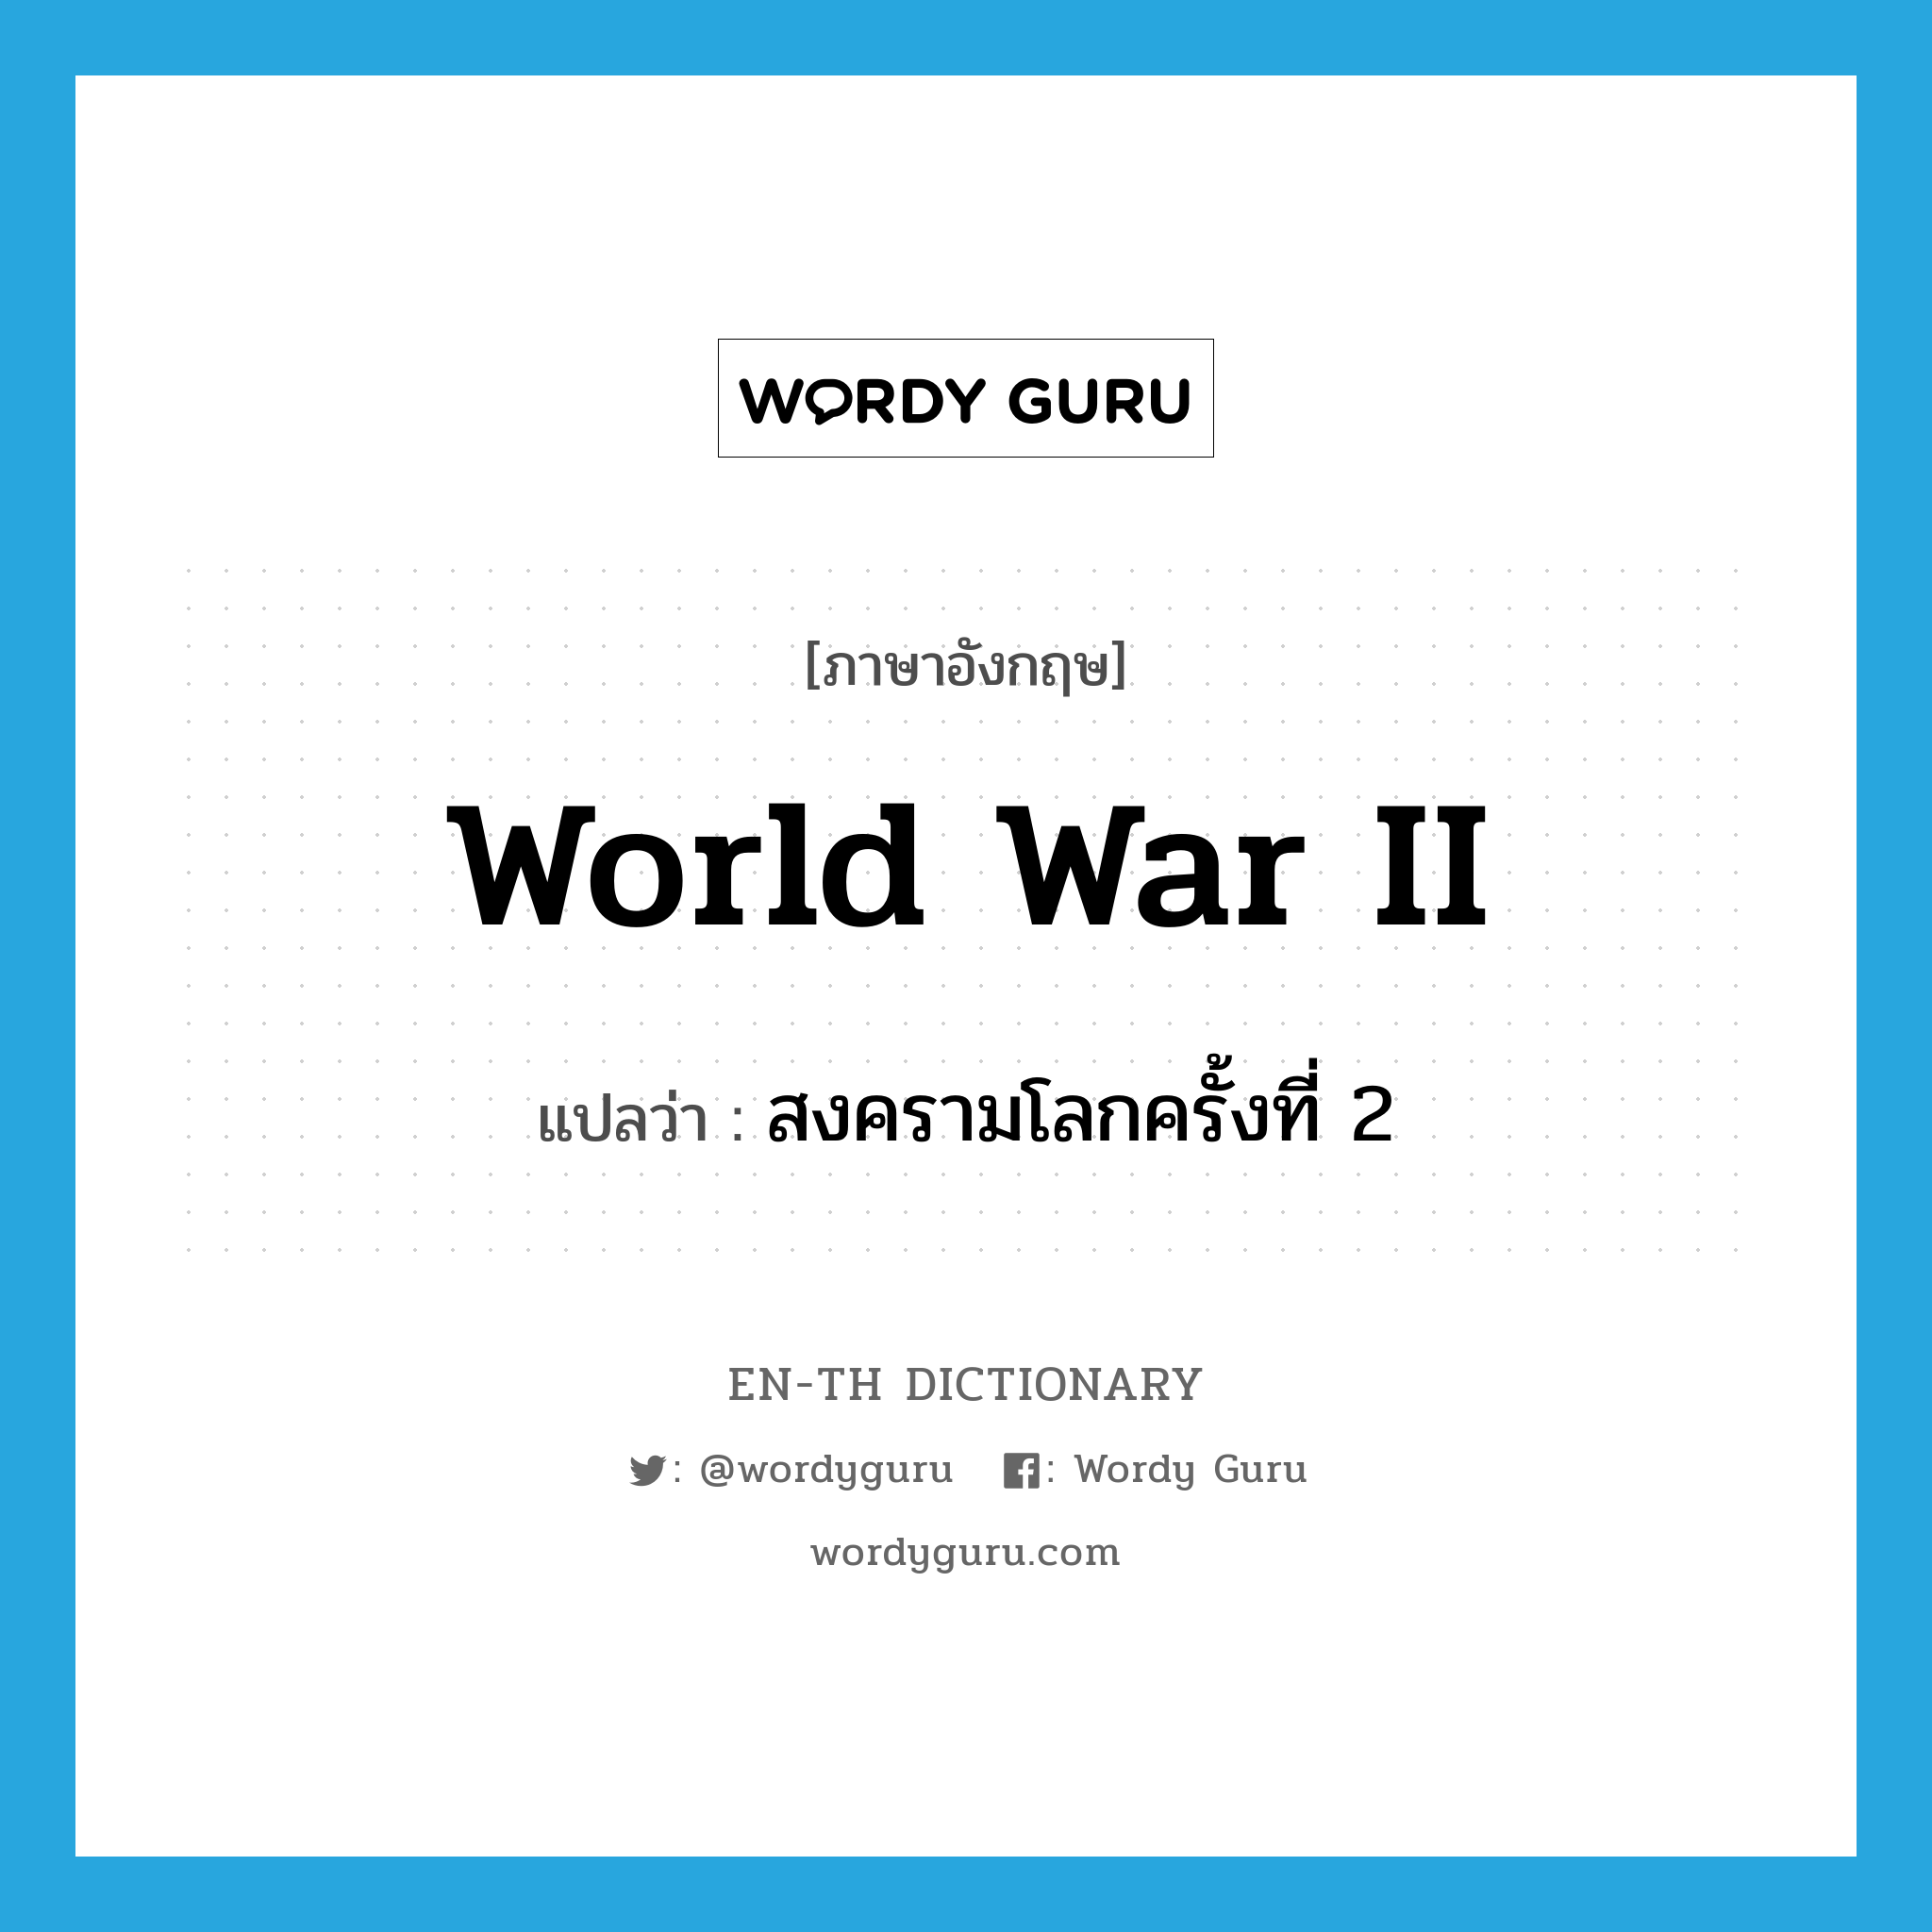 สงครามโลกครั้งที่ 2 ภาษาอังกฤษ?, คำศัพท์ภาษาอังกฤษ สงครามโลกครั้งที่ 2 แปลว่า World War II ประเภท N หมวด N